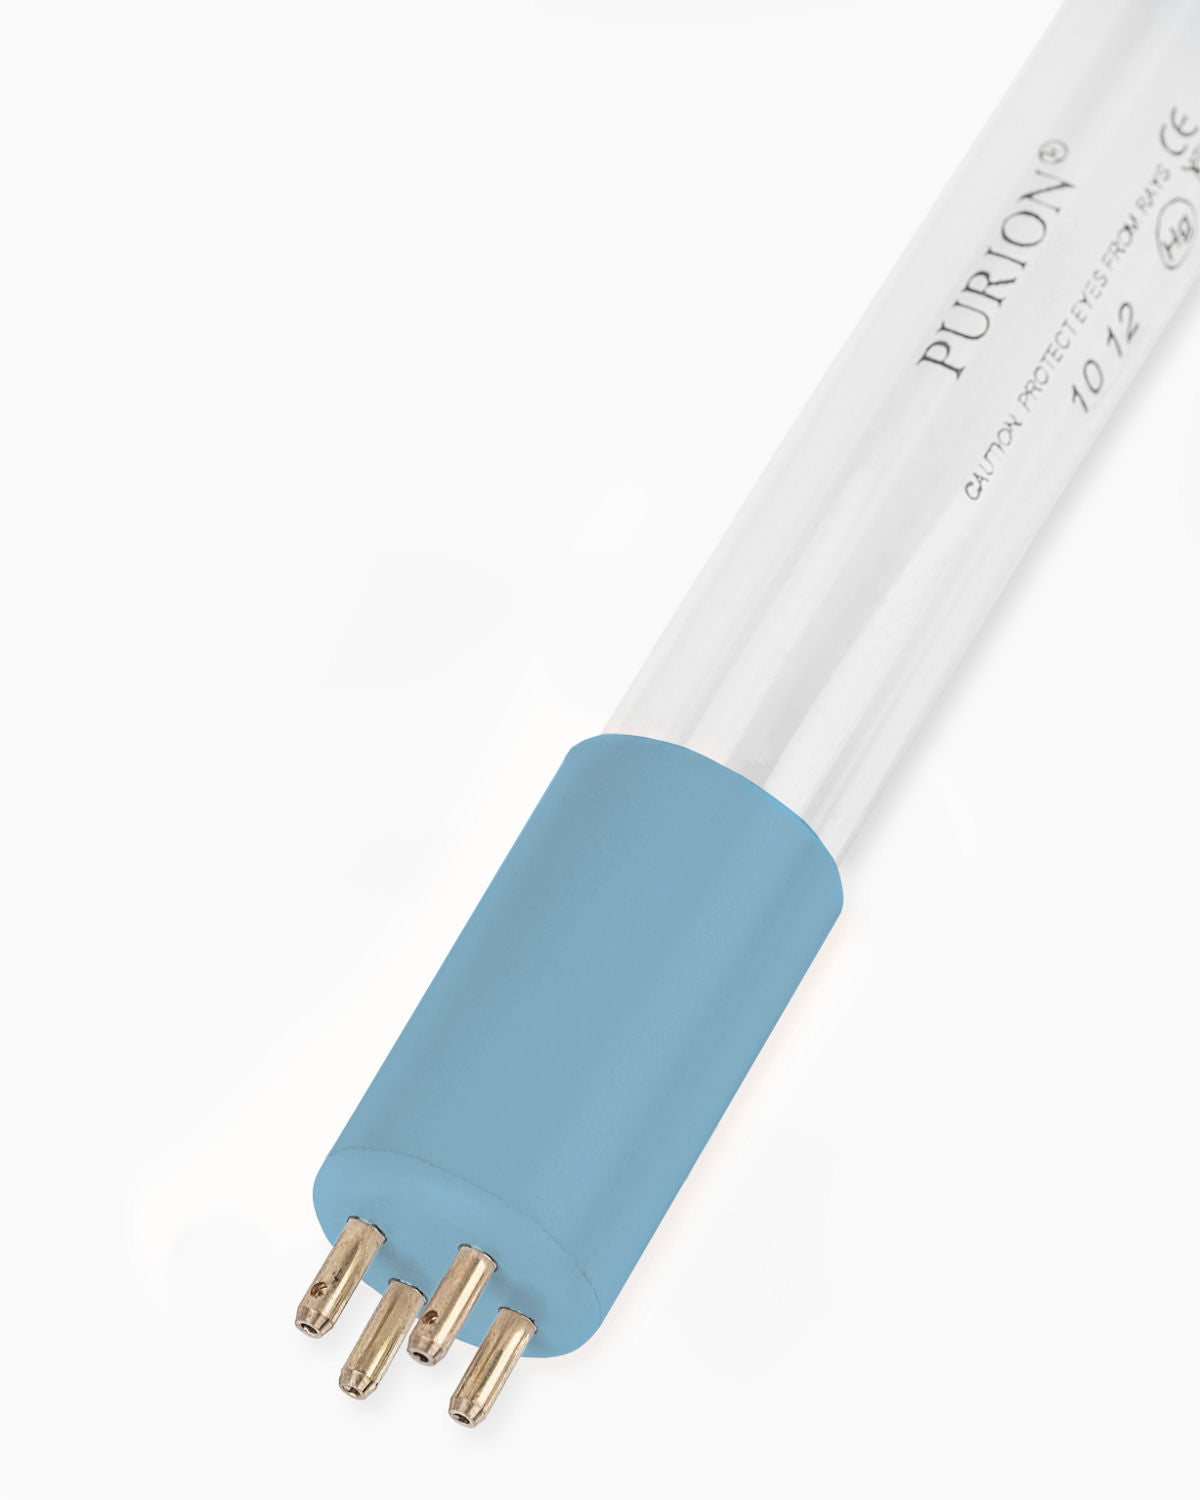 Eine blaue PURION 1000 H OTC Bundle-Lichtröhre auf weißem Hintergrund.